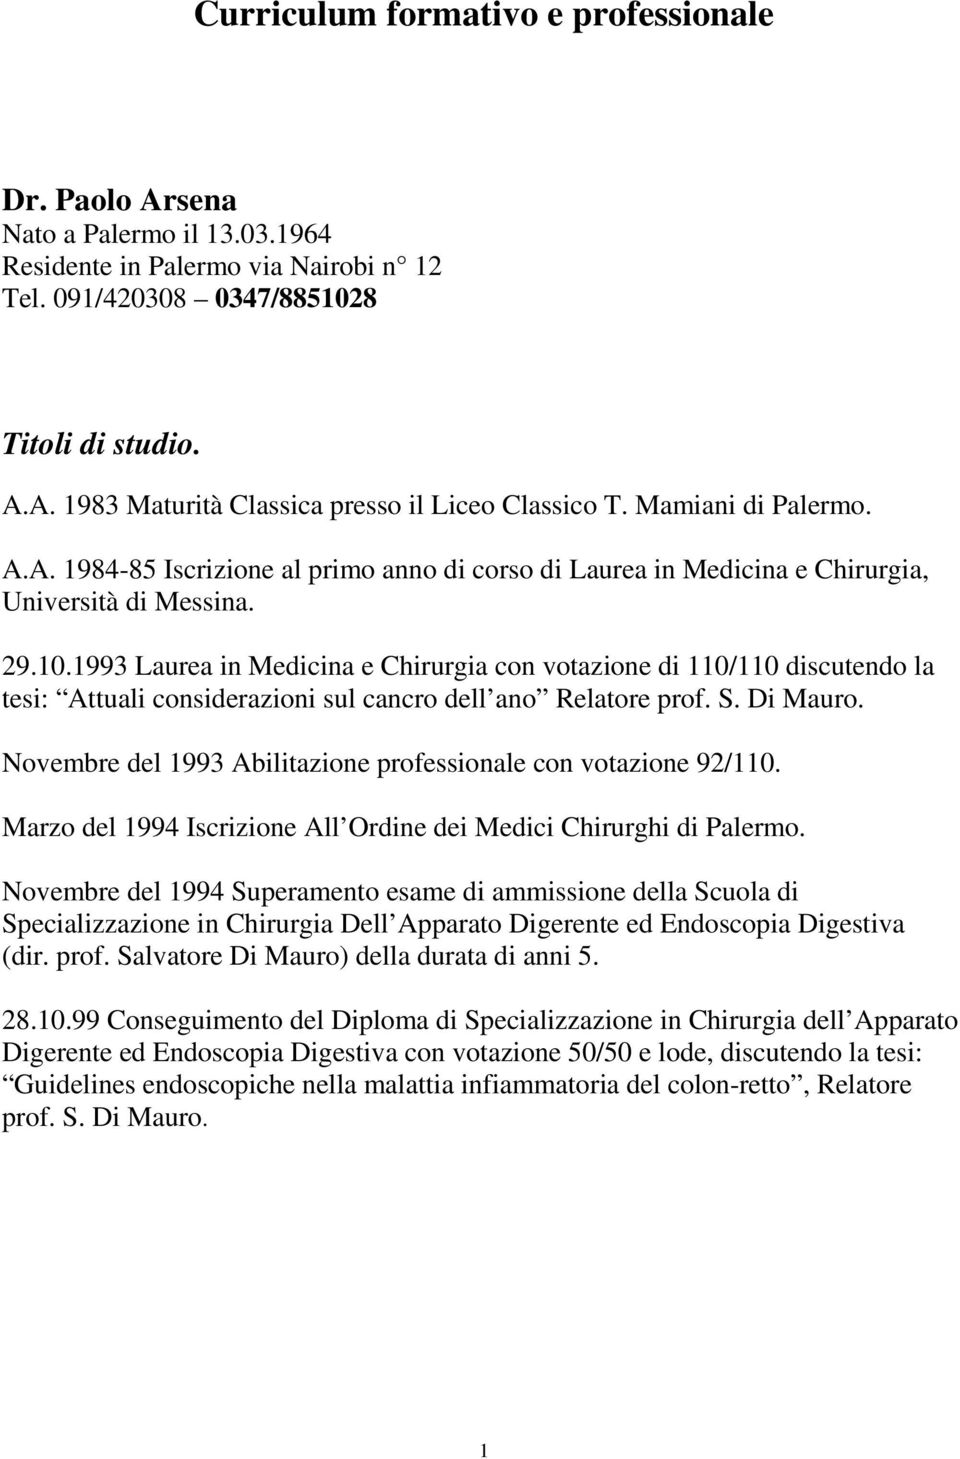 1993 Laurea in Medicina e Chirurgia con votazione di 110/110 discutendo la tesi: Attuali considerazioni sul cancro dell ano Relatore prof. S. Di Mauro.